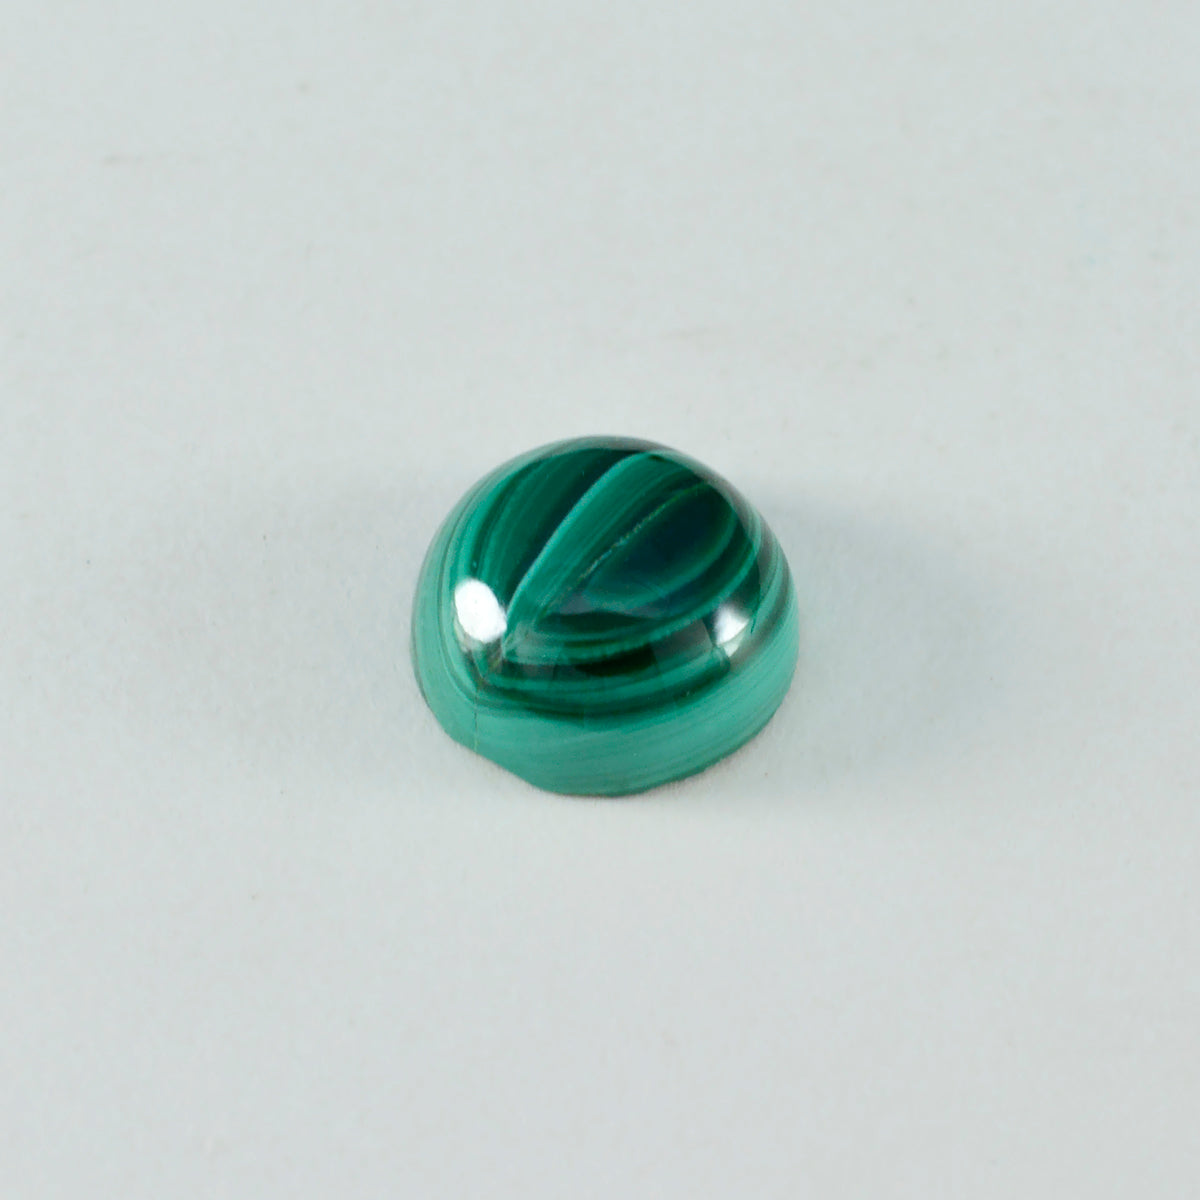 Riyogems, 1 pieza, cabujón de malaquita verde, 15x15mm, forma redonda, gemas sueltas de calidad dulce